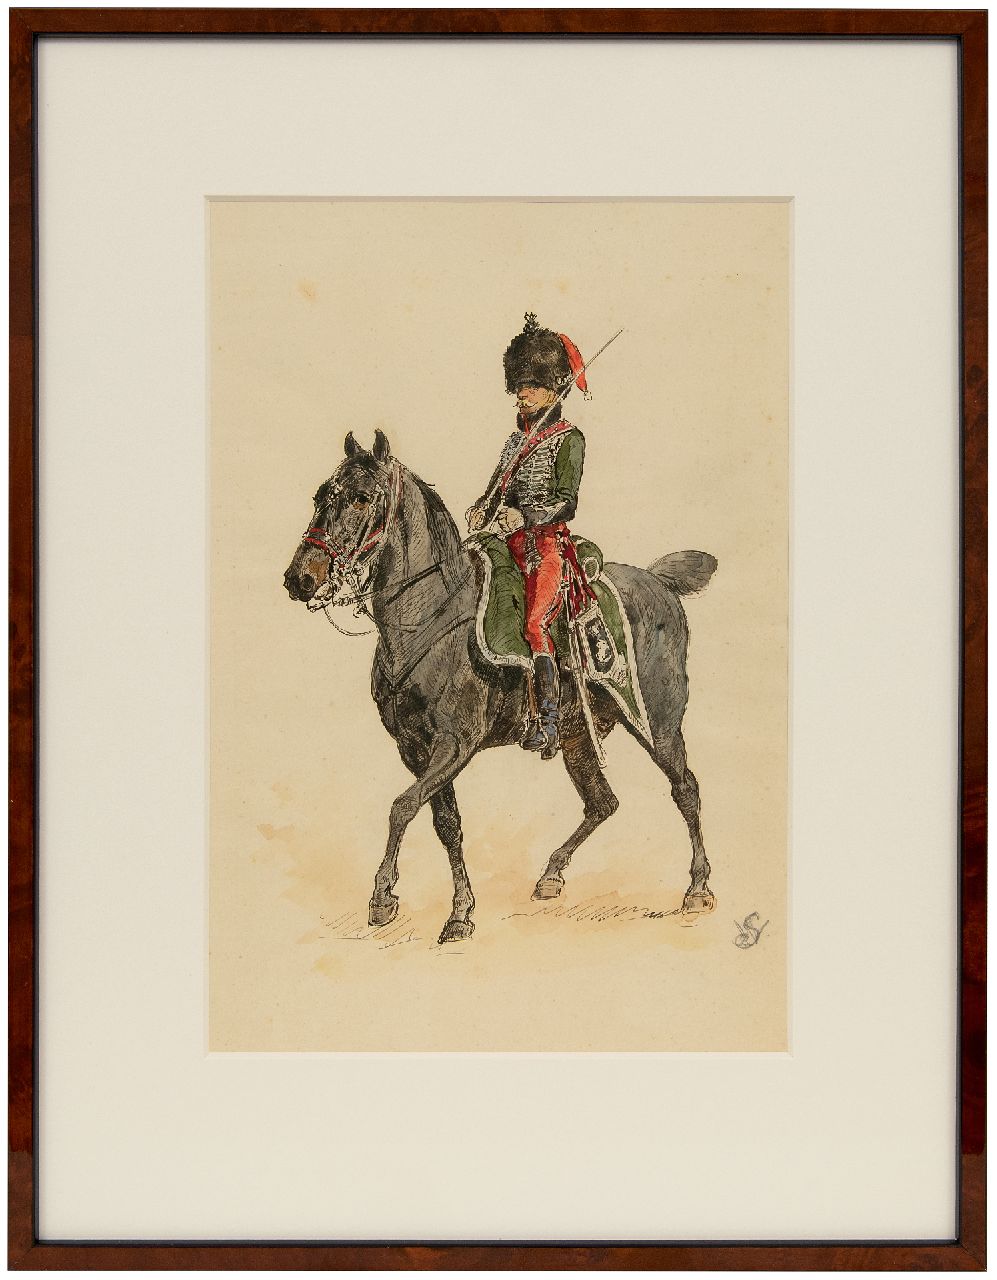 Staring W.C.  | Willem Constantijn Staring | Aquarelle und Zeichnungen zum Verkauf angeboten | Dragoner zu Pferd, Tinte und Aquarell auf Papier 33,5 x 21,0 cm, datiert 1 April 1906 (in Bleistift)